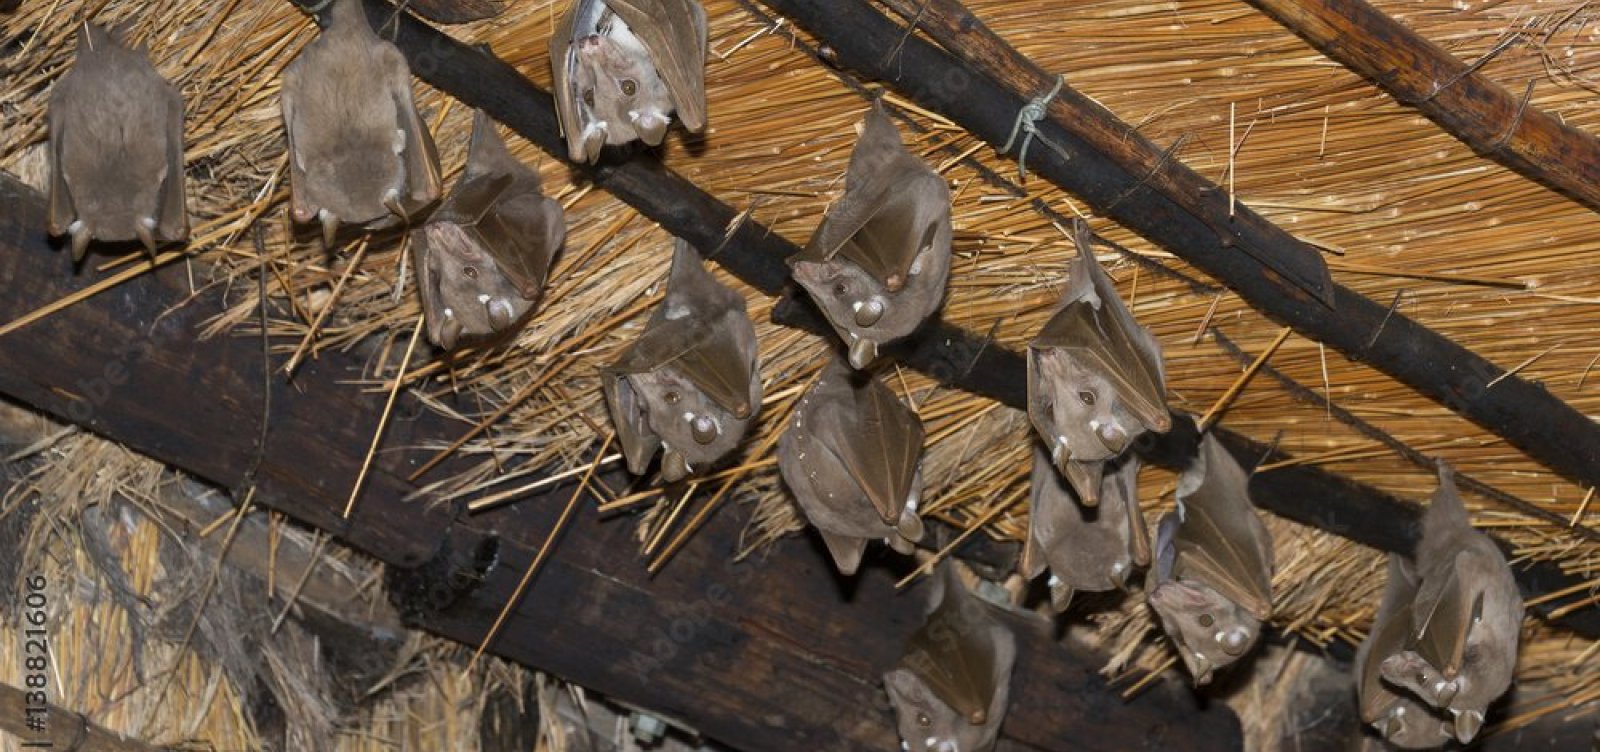 Sexta-feira 13 de terror: mais de 30 morcegos invadem casa em Periperi